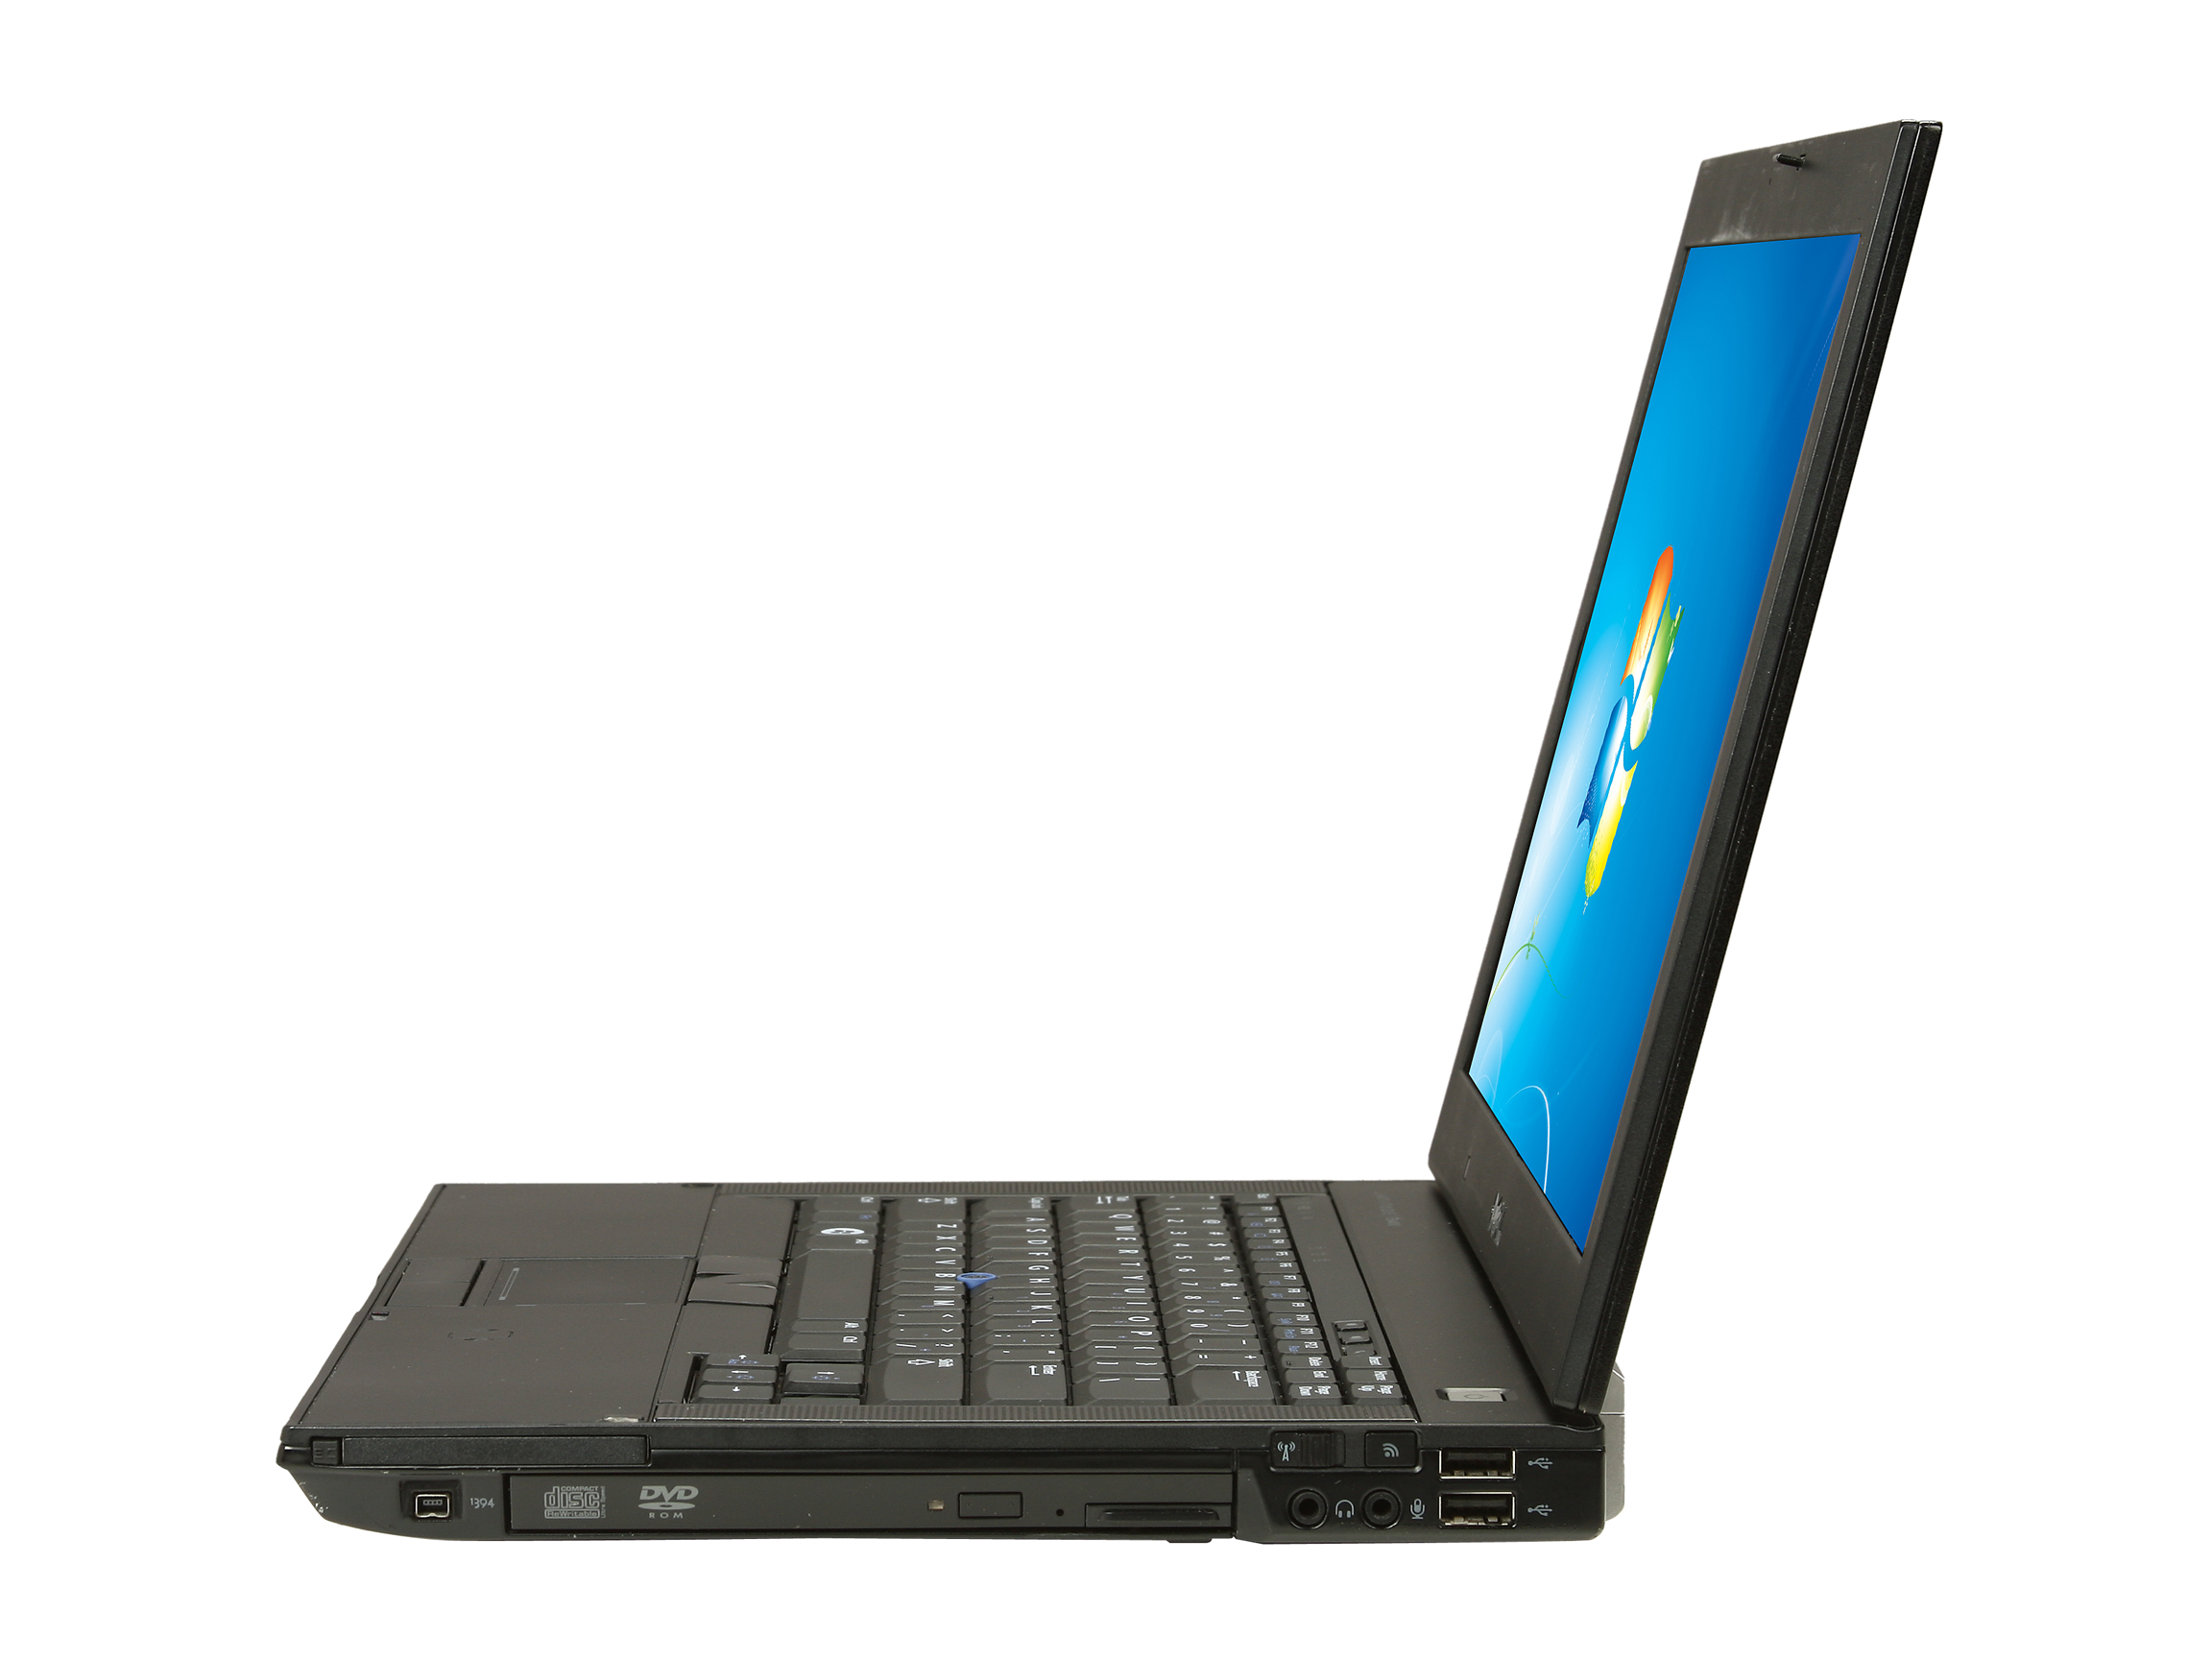 DELL Latitude E6400 Notebook Intel Core 2 Duo 2.26GHz 2GB Memory 80GB HDD Intel GMA 4500MHD 14.1" Windows 7